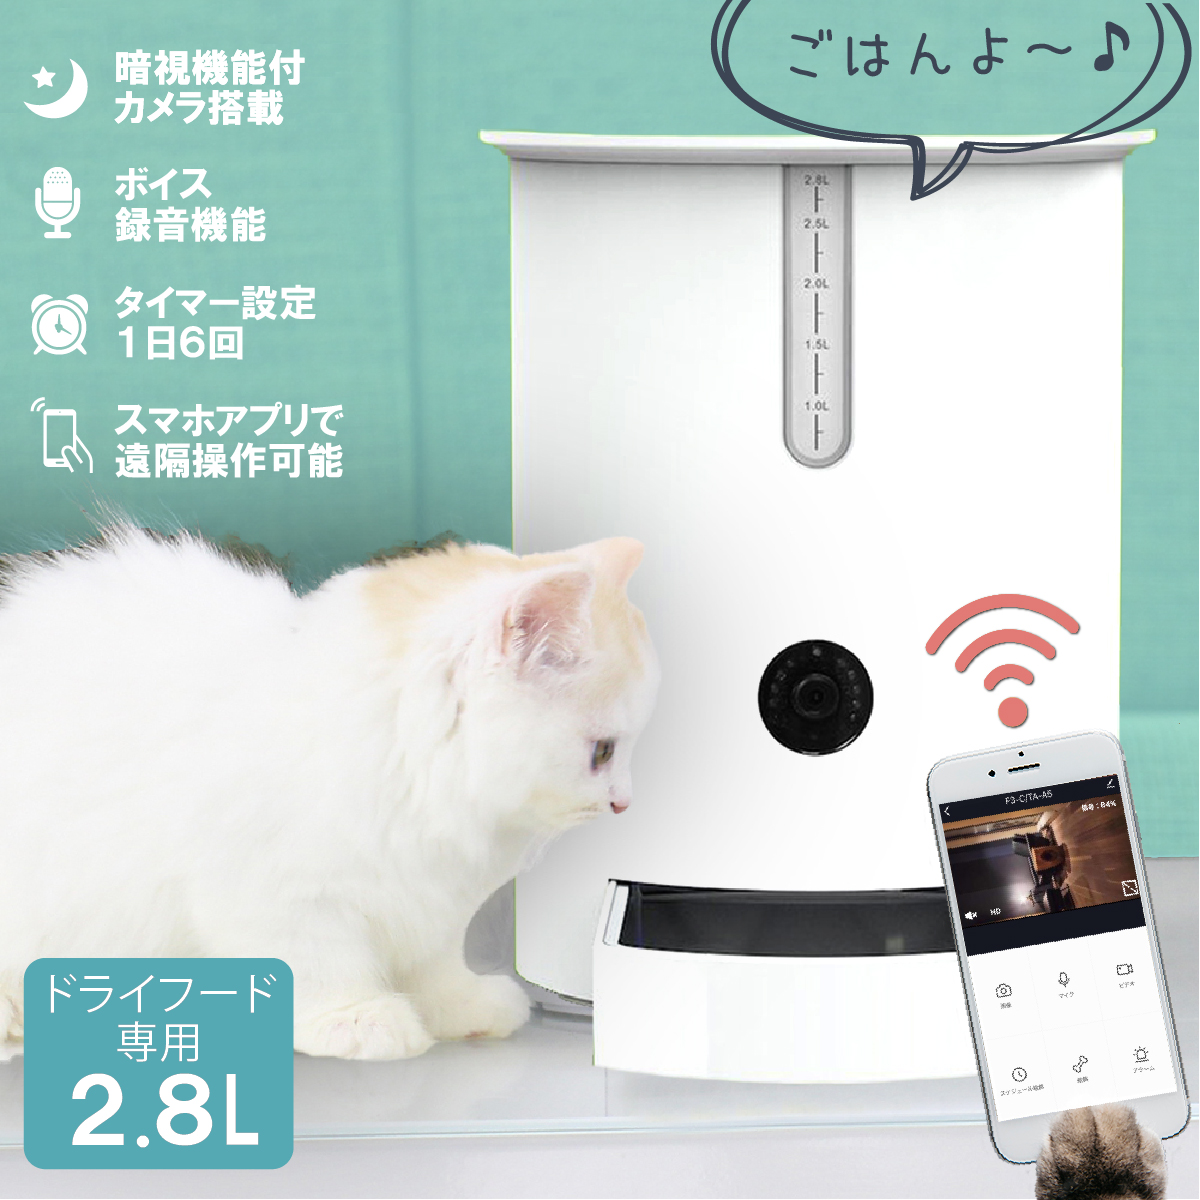 送料無料でお届けします 自動給餌器 Mogumoguくん スマホ操作 アプリ連動 カメラ付き ステンレス 遠隔操作 呼びかけ 会話 録画 静止画撮影 暗視カメラ 日本語対応アプリ Iphone Ios Android 対応 多機能 食事管理 ペット 犬 猫 自動餌やり機 オートマチック ペット